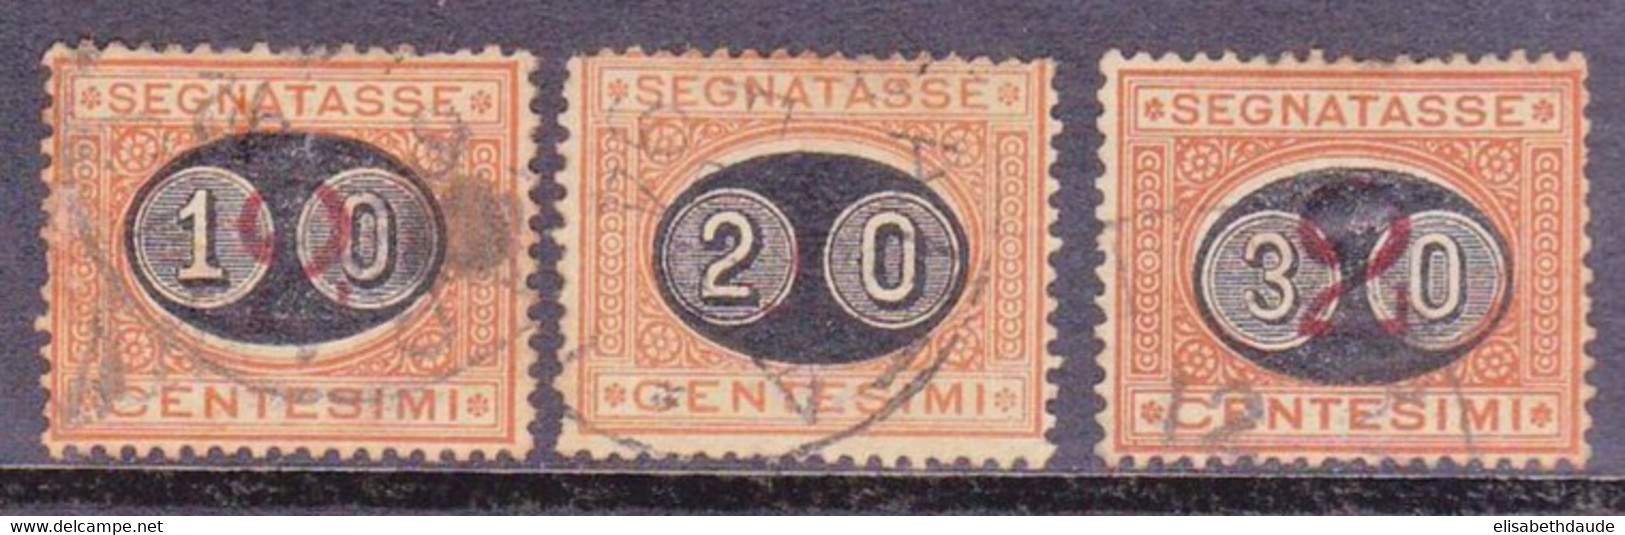 ITALIE - 1890 - YVERT N°22/24 OBLITERES - TAXE - COTE = 57 EUROS - Usados